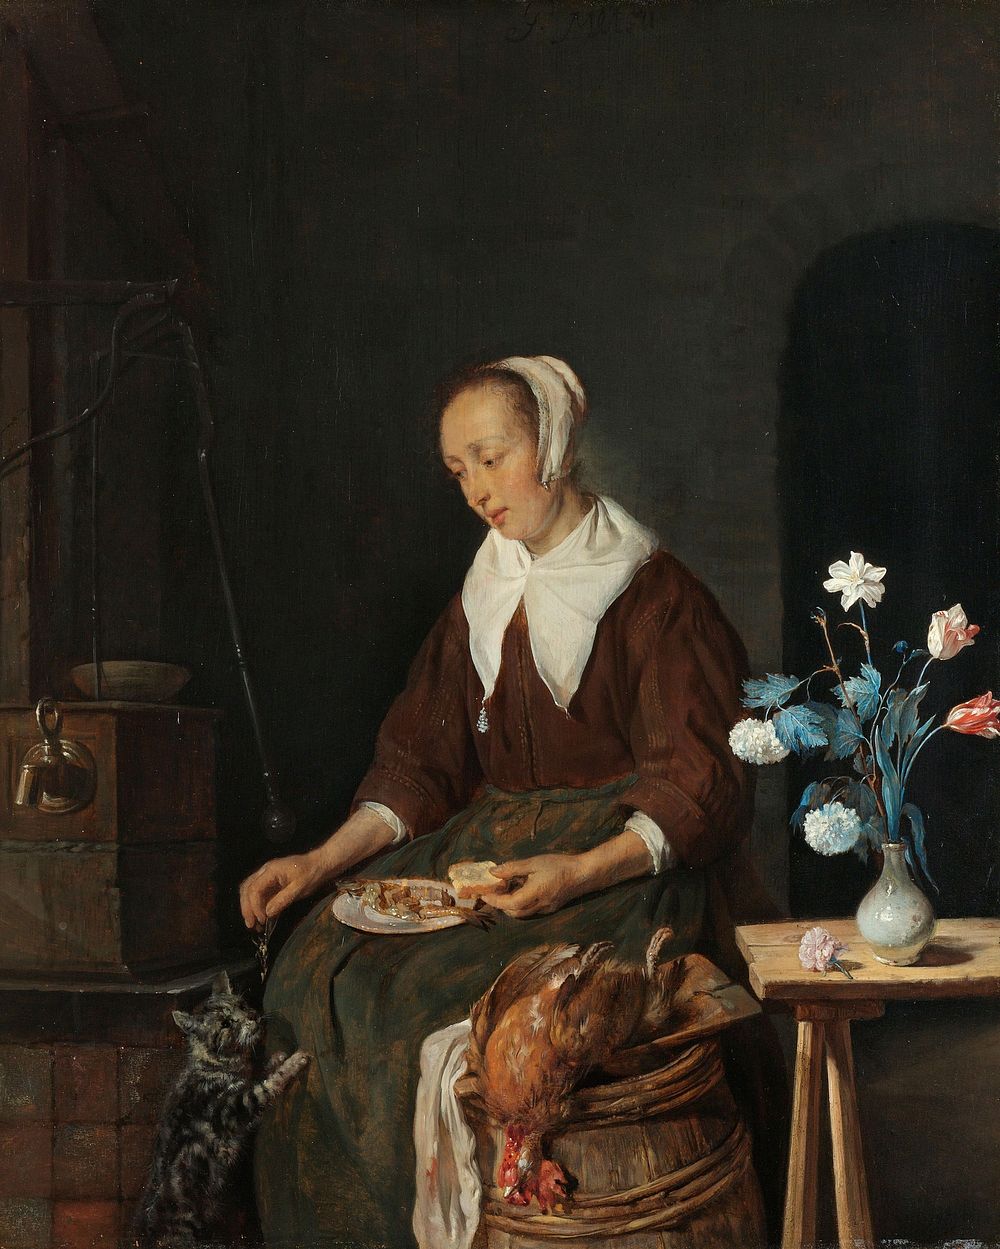 Woman Eating, Known as ‘The Cat’s Breakfast’ (c. 1661 - c. 1664) by Gabriël Metsu